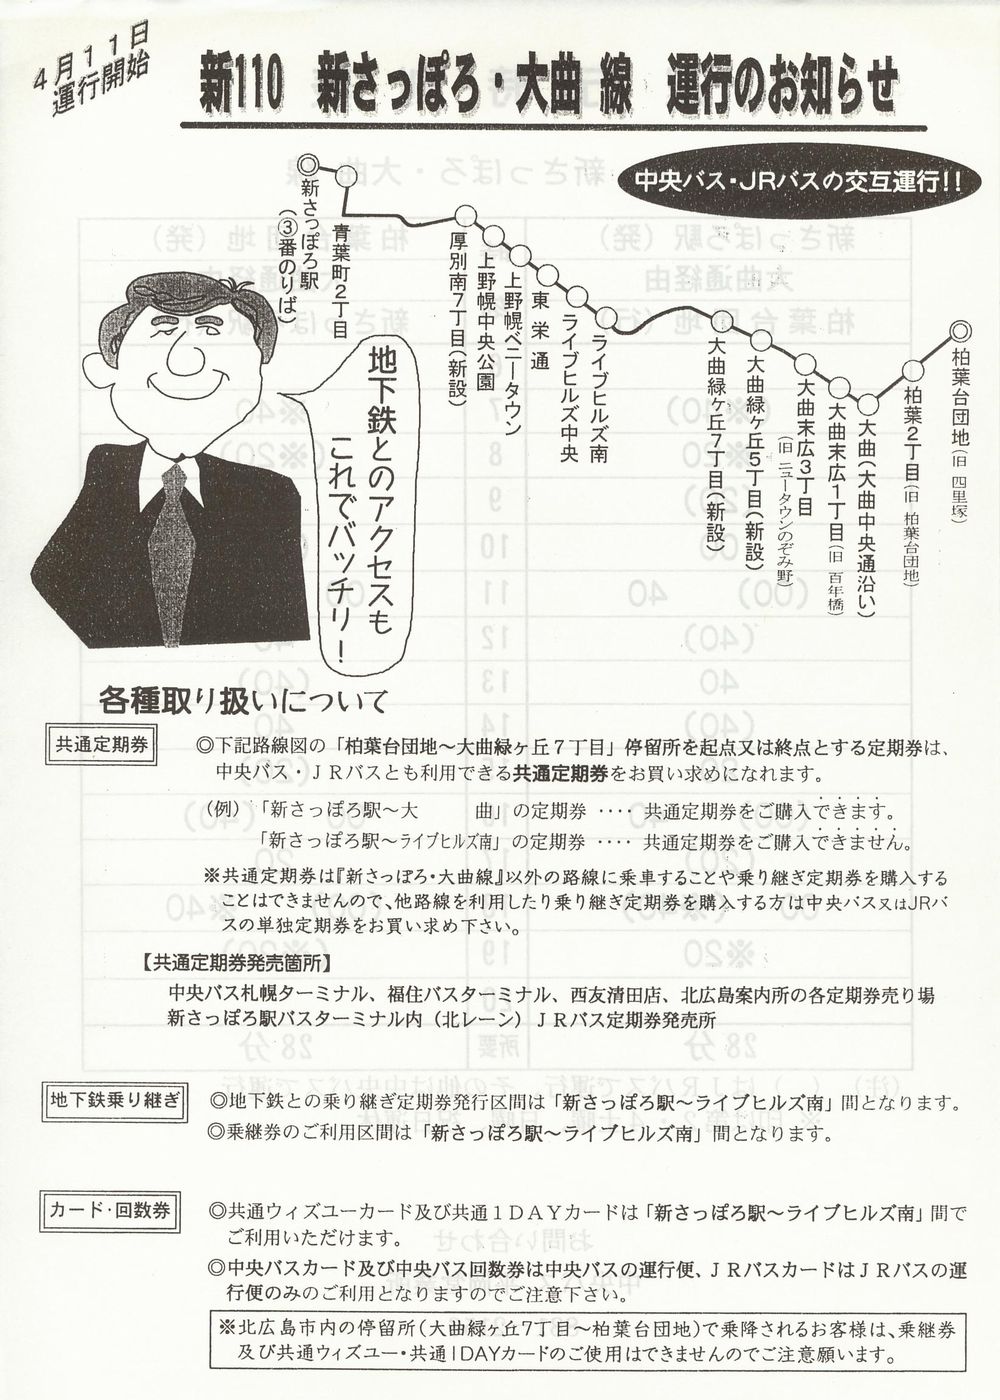 1998-04-11改正_北海道中央バス(札幌)・ＪＲ北海道バス_新さっぽろ・大曲線運行開始チラシ表面